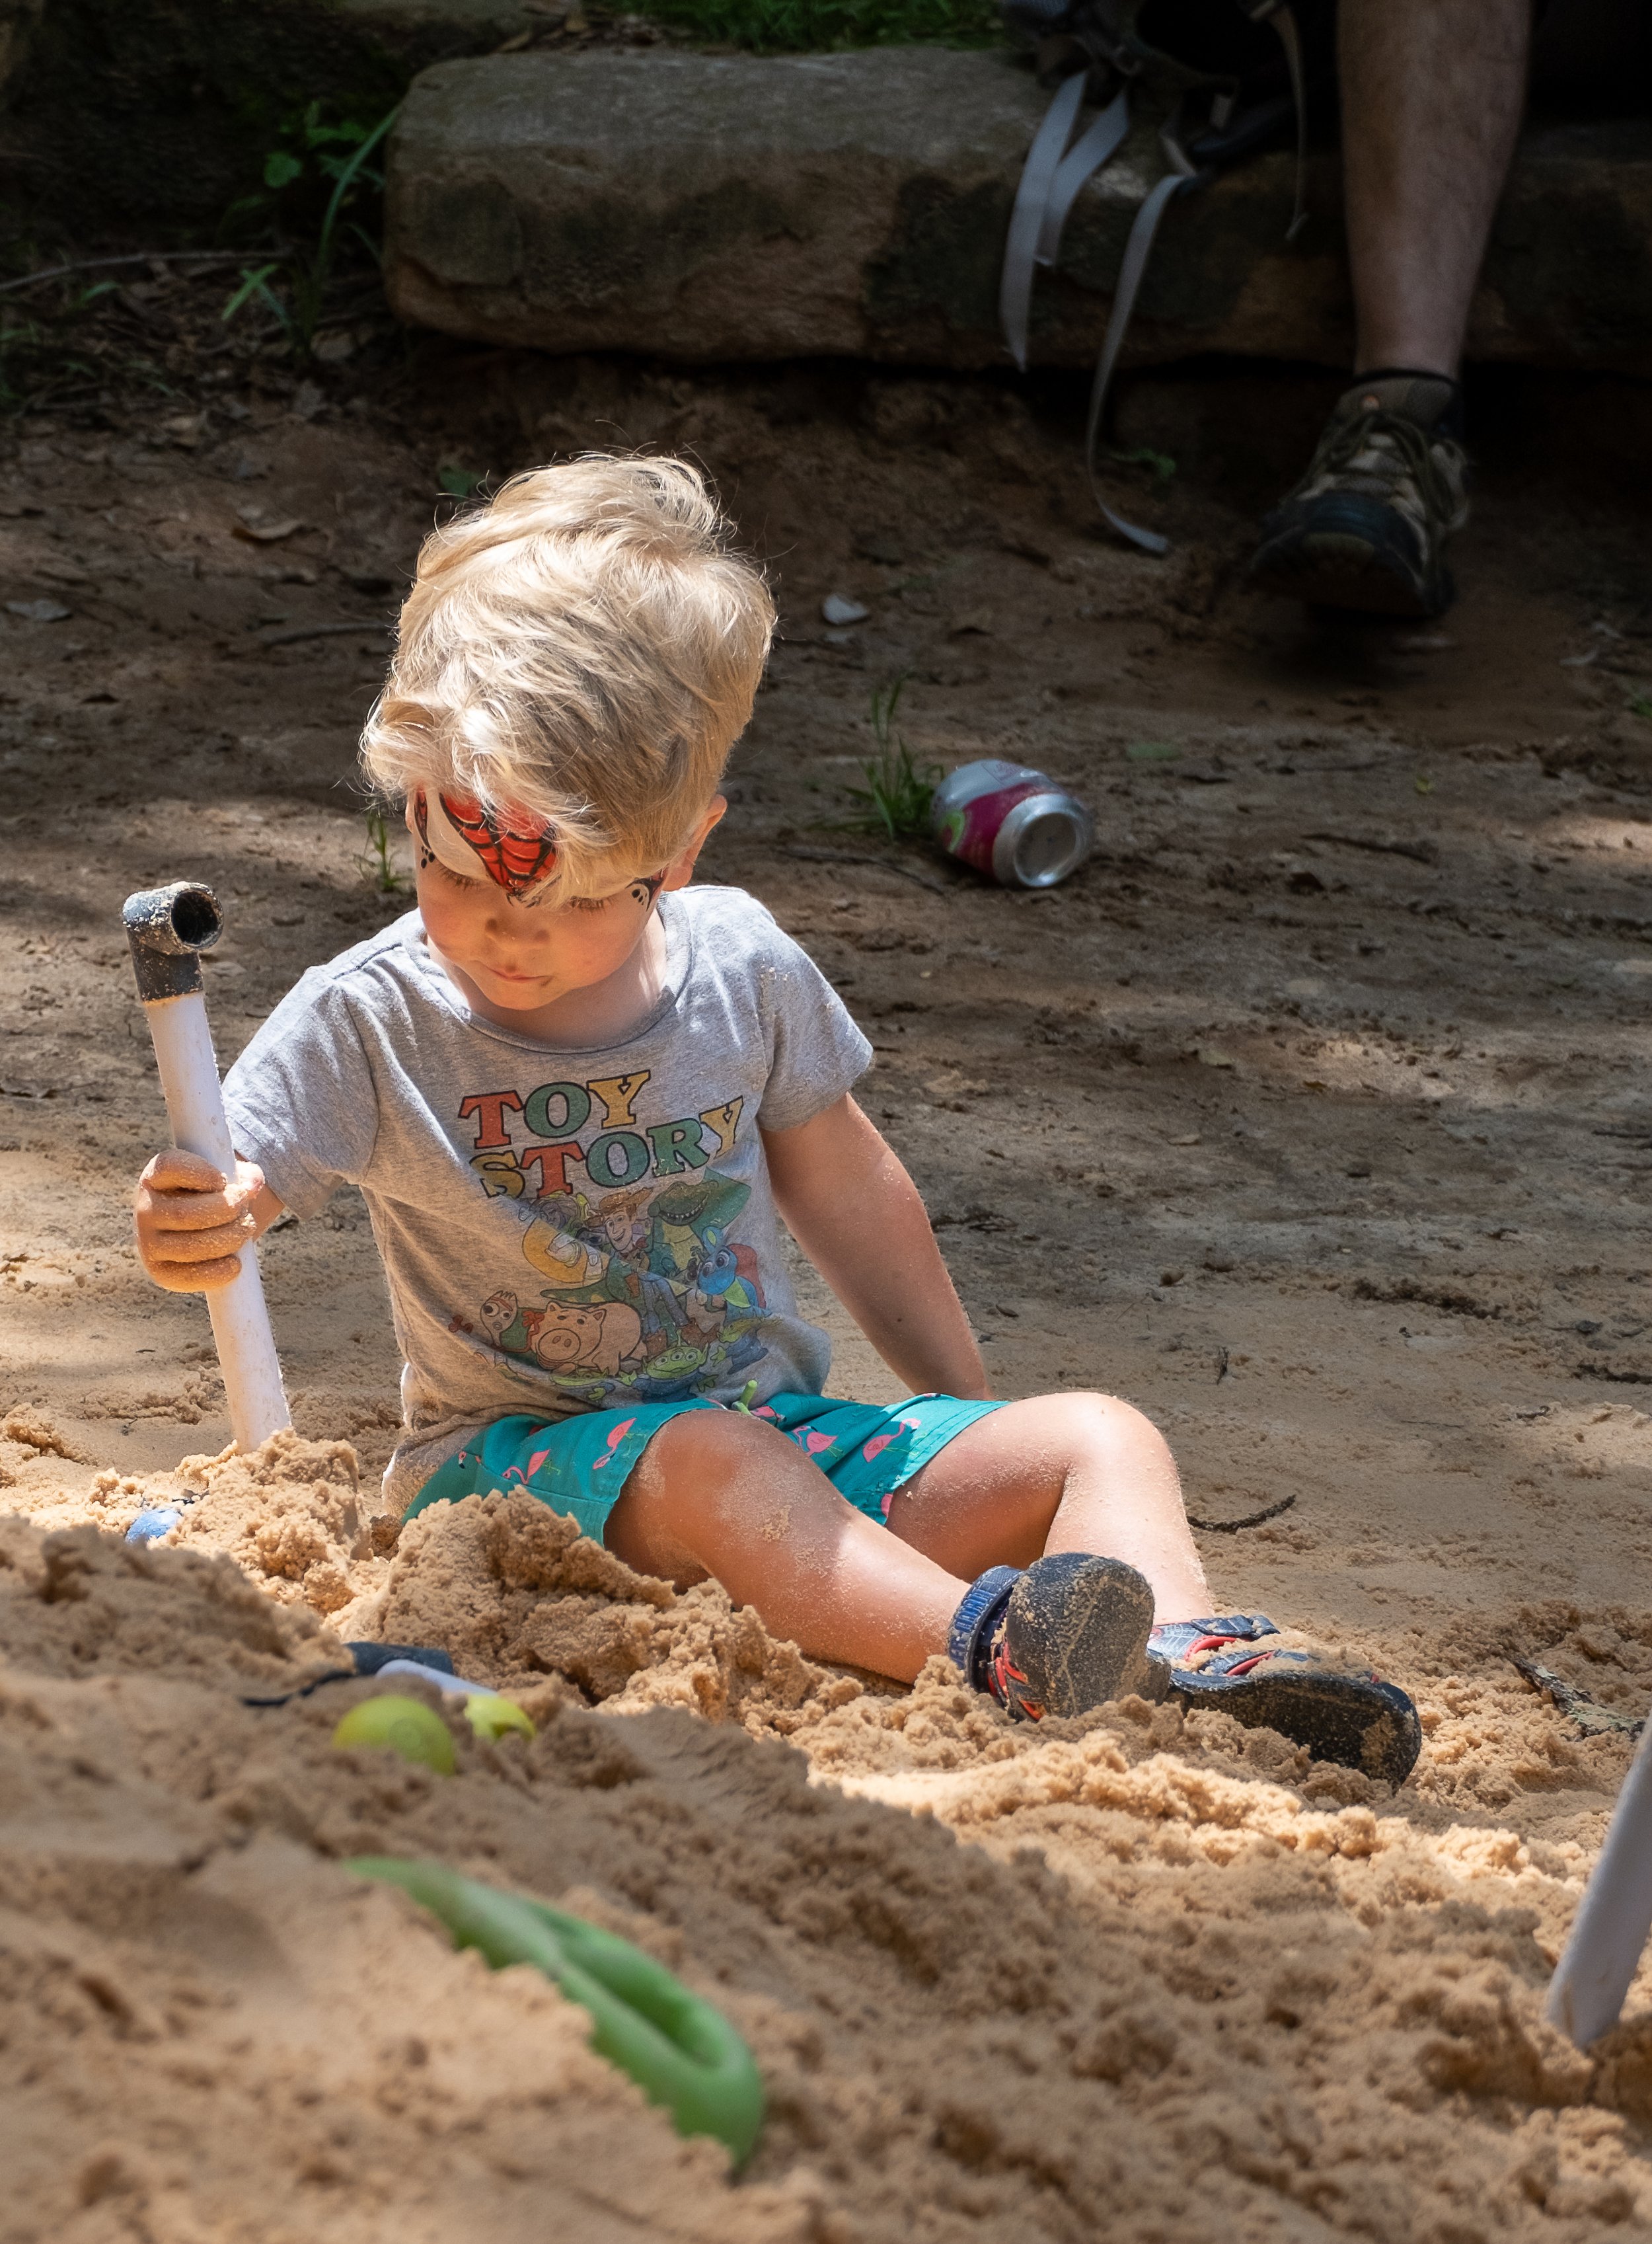 Boy in Sand Pile 3.jpg